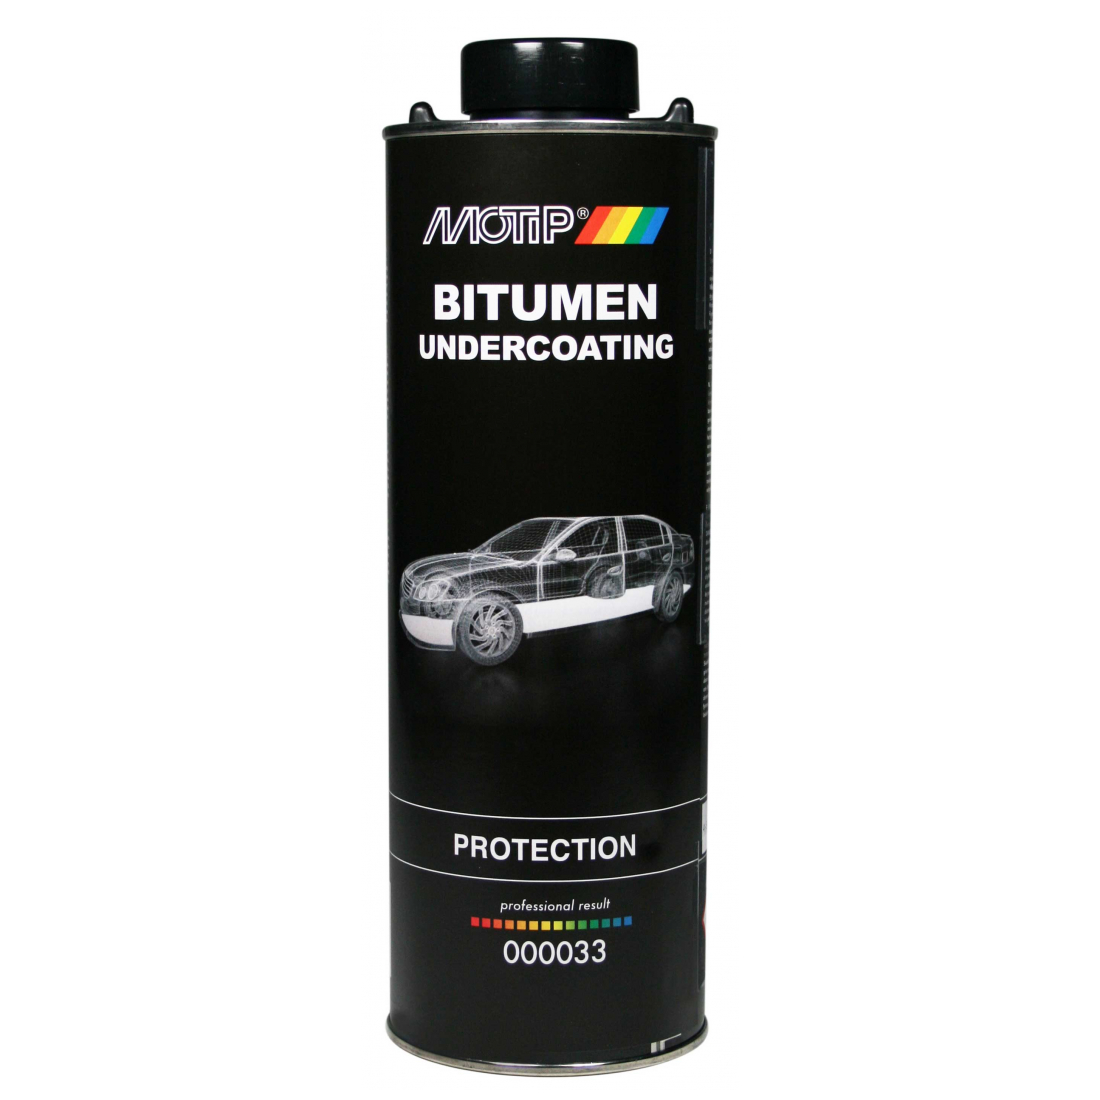 Motip Unterbodenschutz-Dose Bitumen 1000 ml 000033